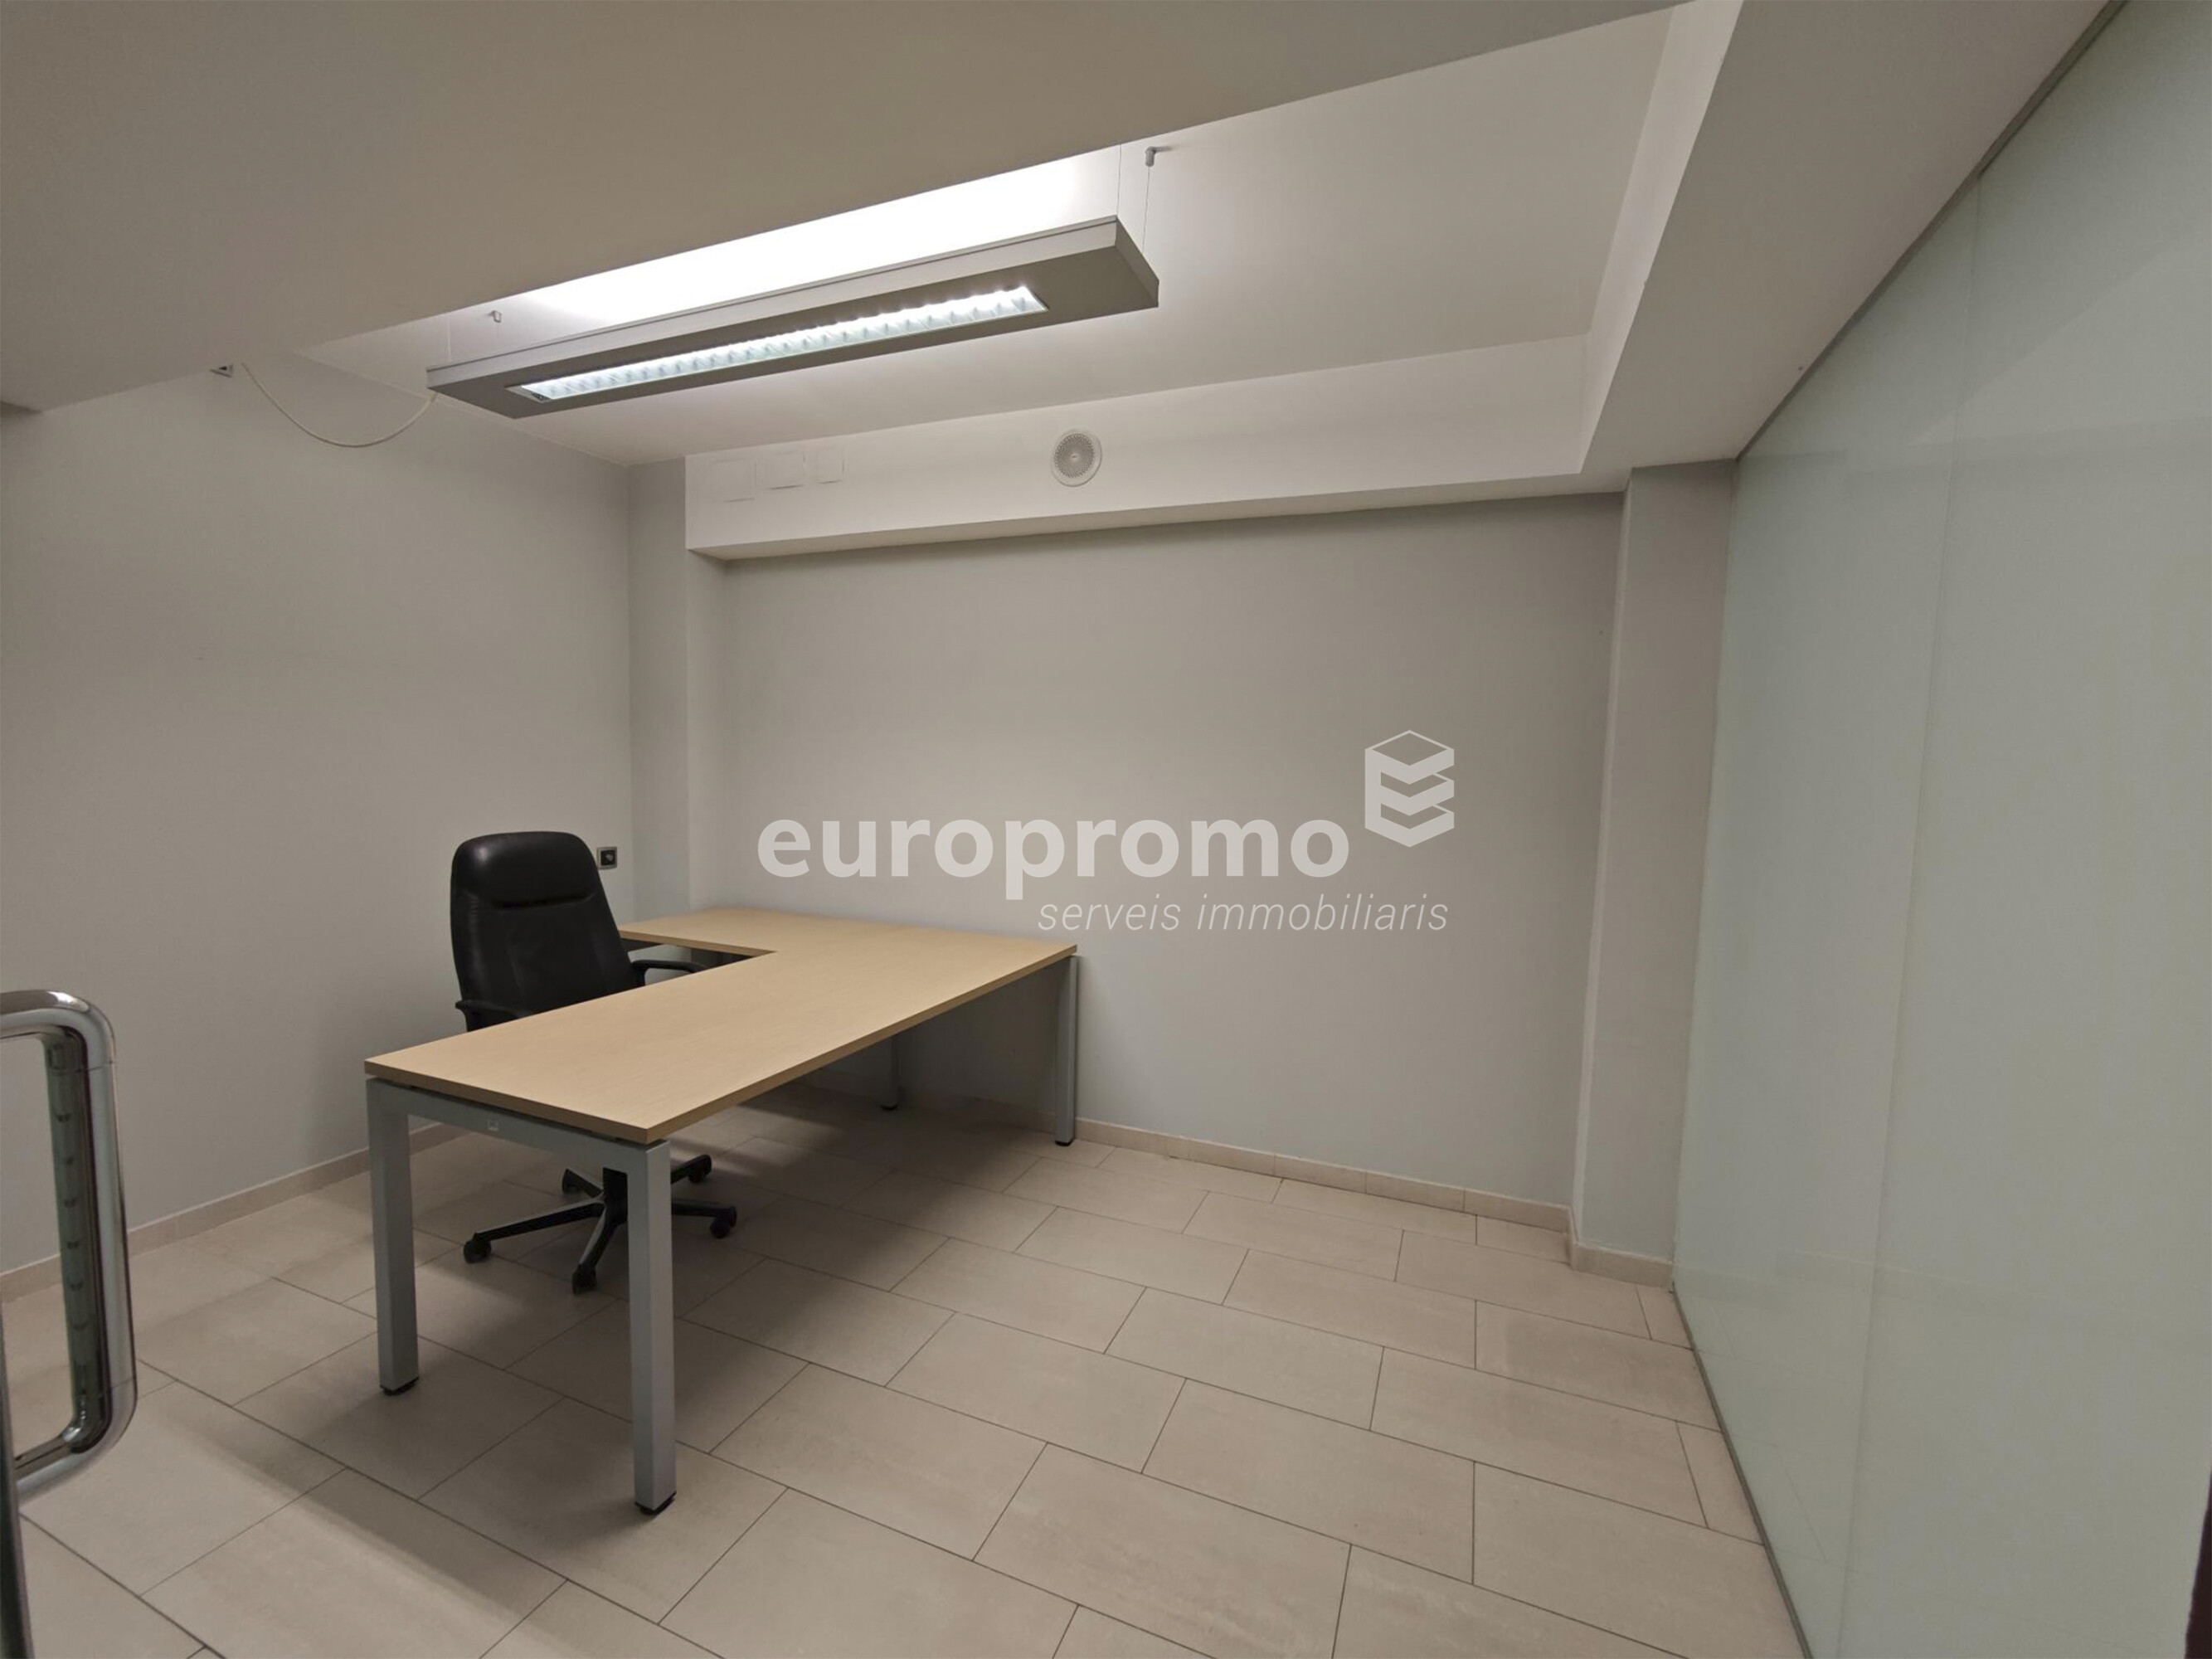 Oficina de 400m2 distribuida en dos plantas y situada en el centro de Girona!